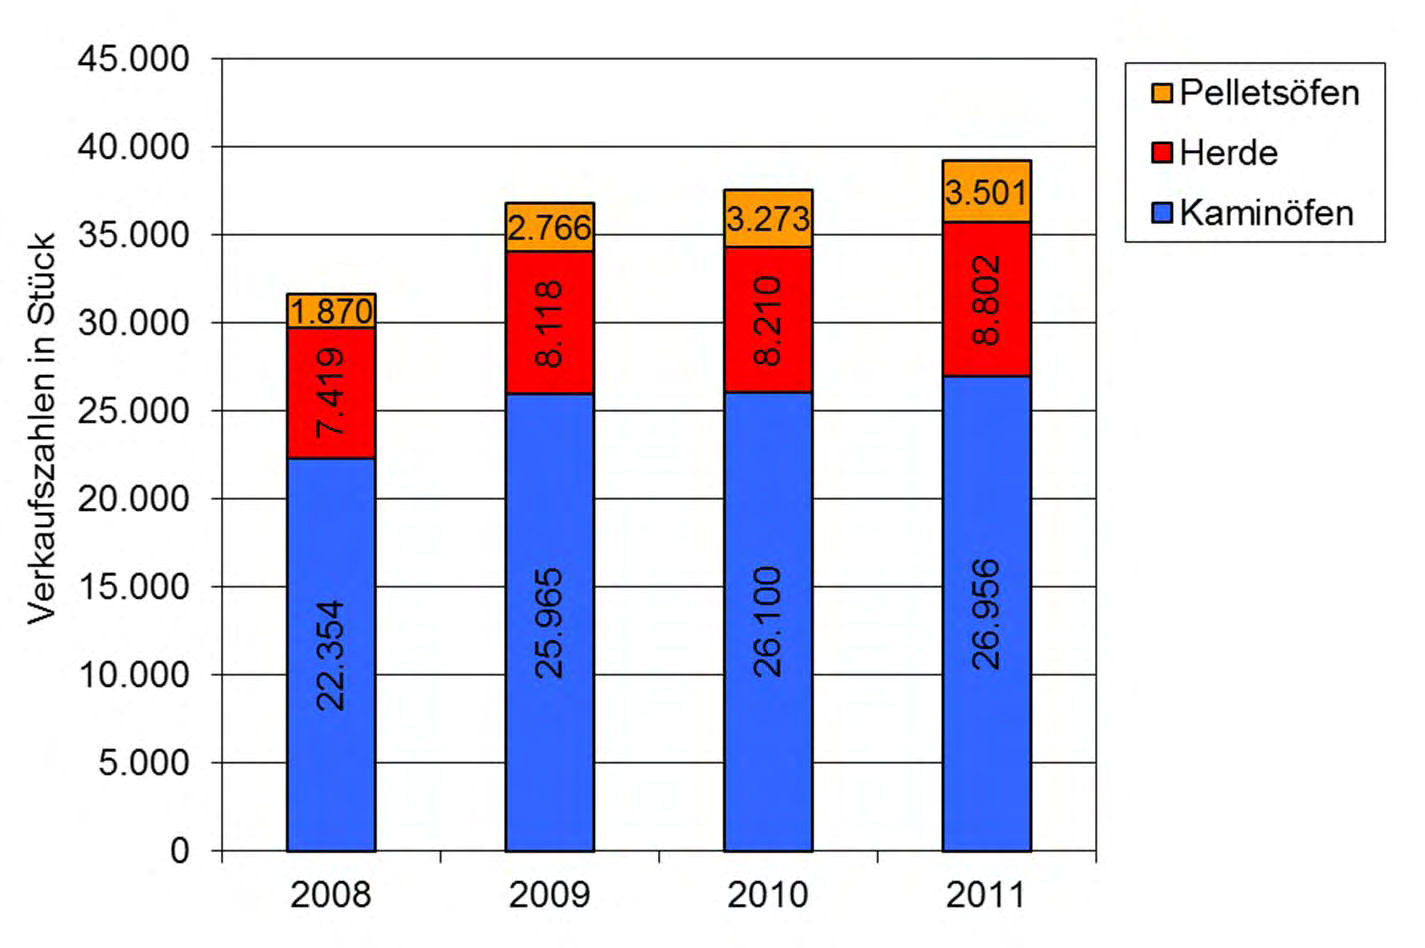 Feste Biomasse Kessel und Öfen Marktentwicklung Biomasseöfen 2011 (in Bezug auf 2010): Pelletsöfen: 3.